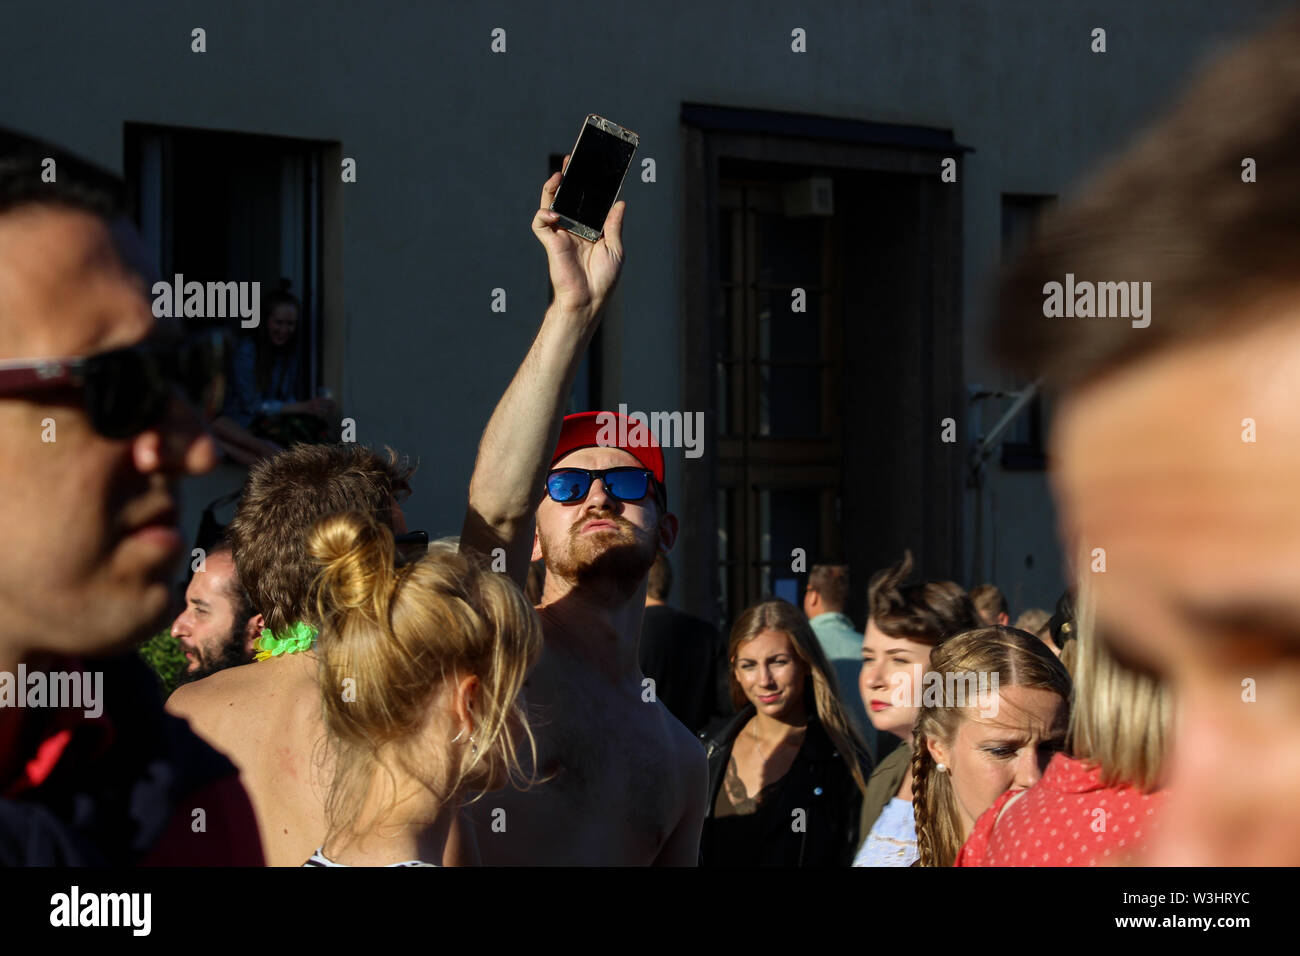 Jeune homme en prenant une partie de bloc à selfies Kallio 2017 à Helsinki, Finlande Banque D'Images